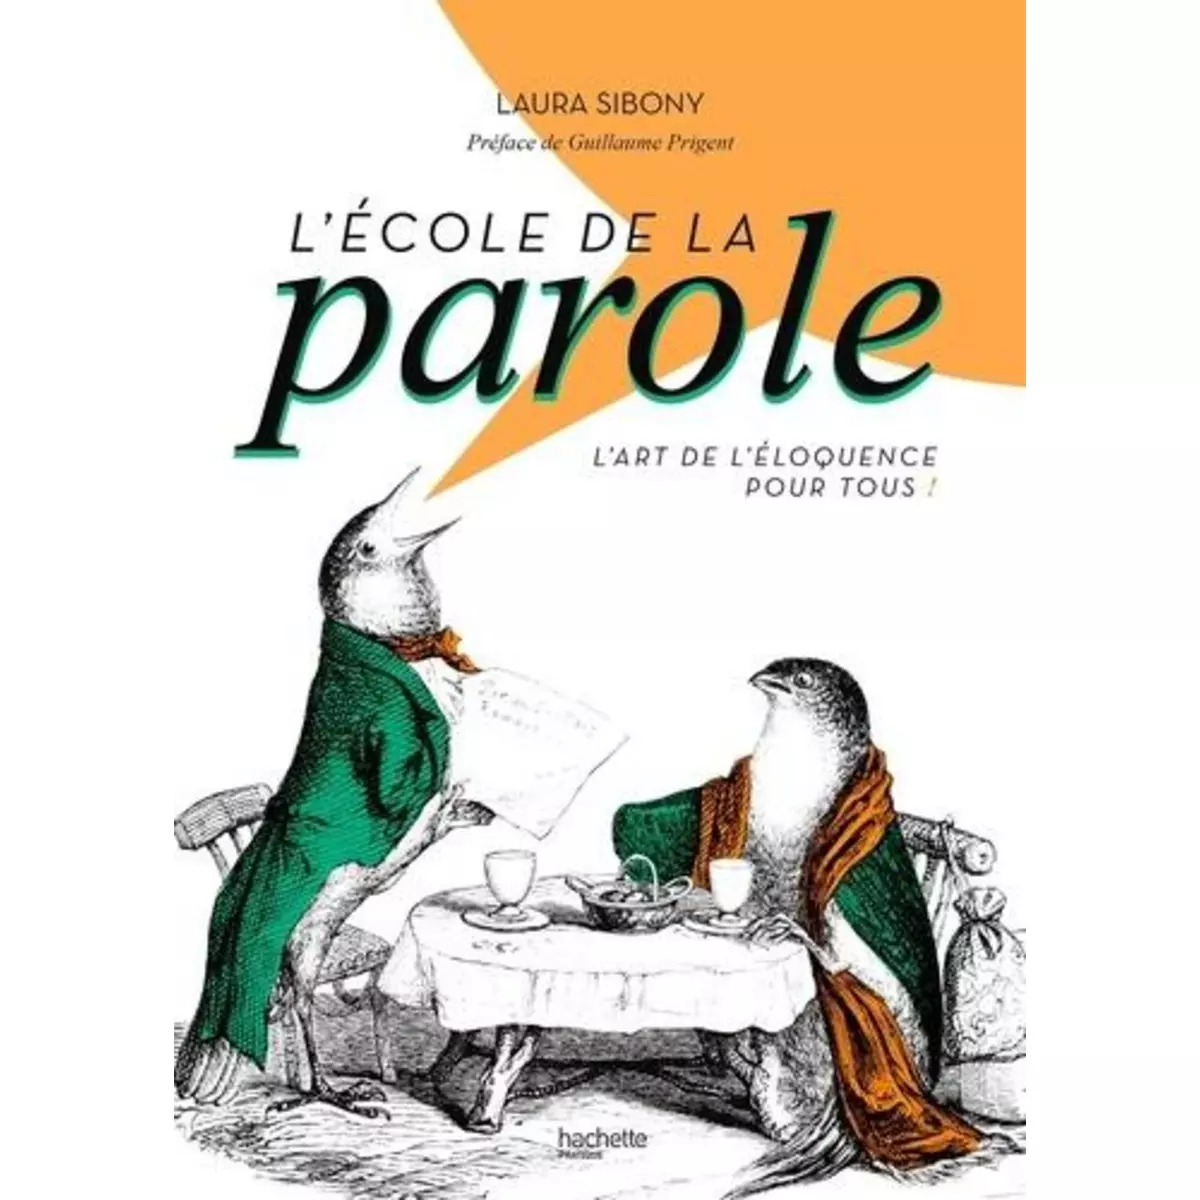  L'ECOLE DE LA PAROLE. L'ART DE L'ELOQUENCE POUR TOUS !, Sibony Laura